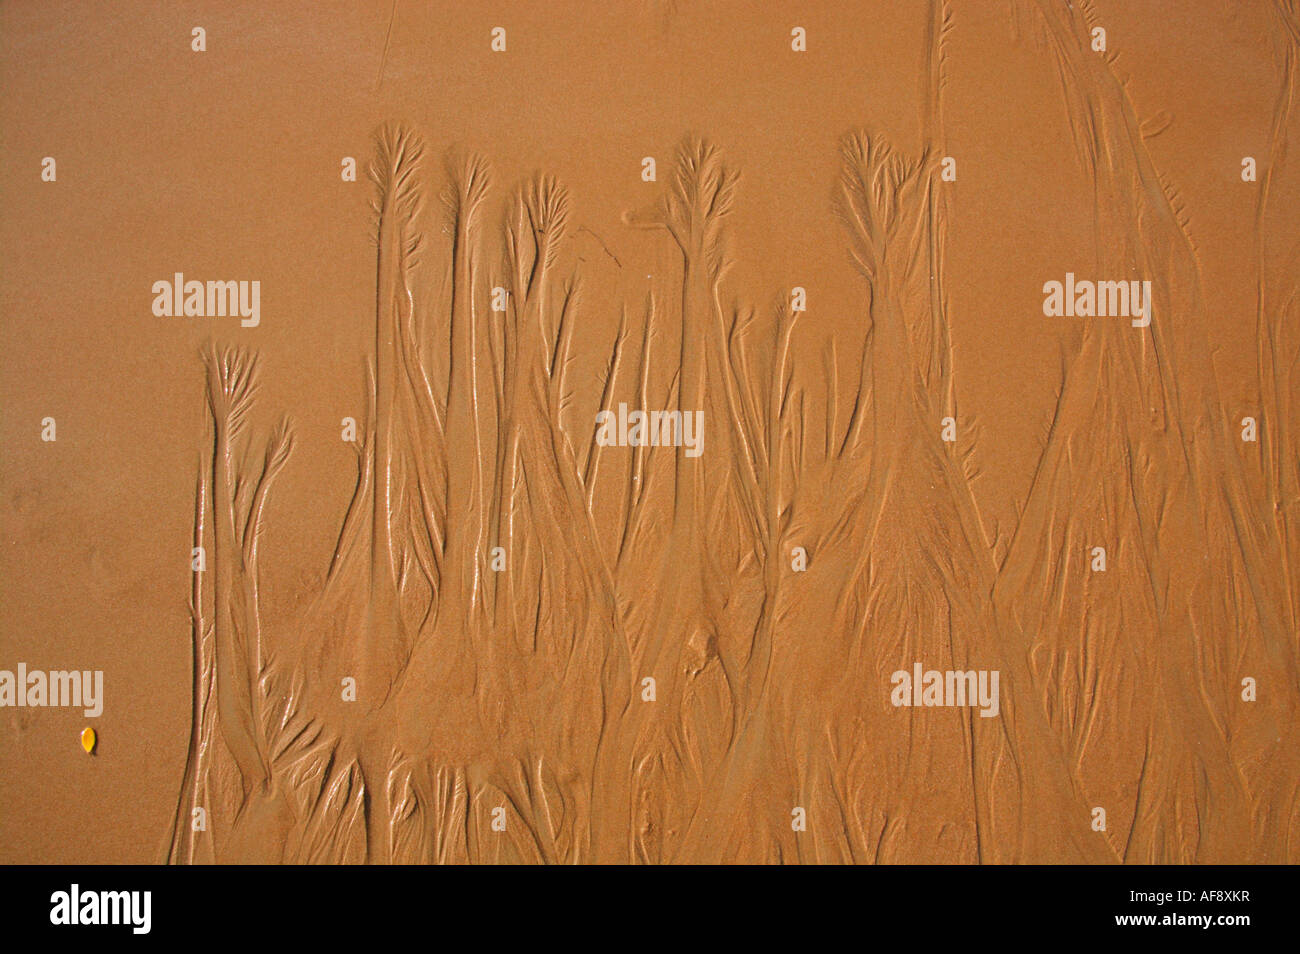 Plage sable érodé par une marée descendante de quitter le schéma d'une forêt de baobabs Banque D'Images